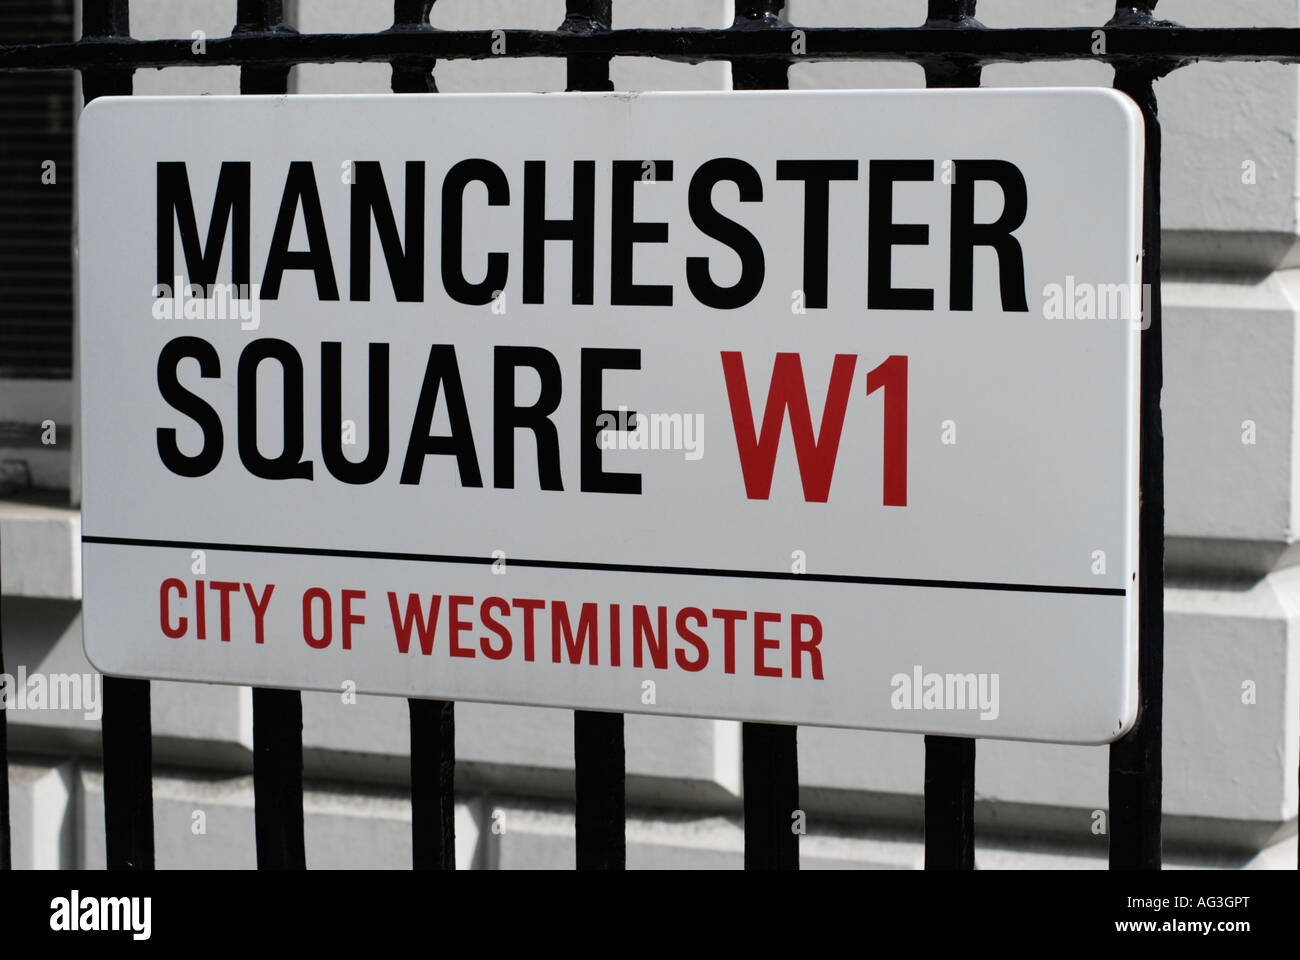 Manchester Square W1 London Stadt von Westminster Straßenschild auf Geländer Stockfoto